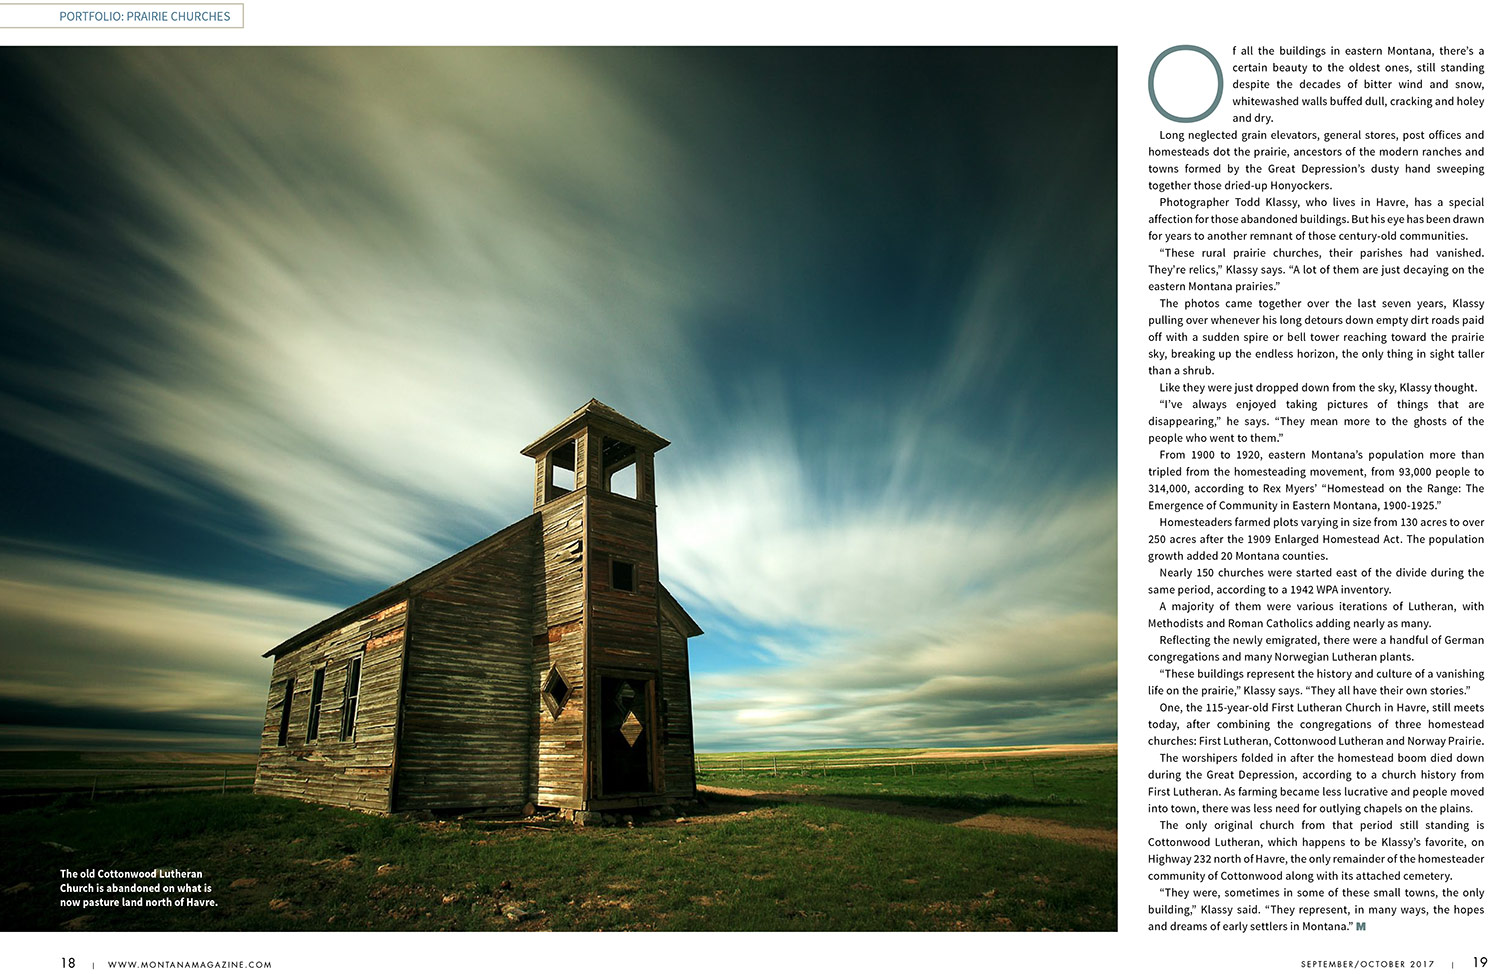 Montana-Magazine-Prairie-Churches-02-Small.jpg